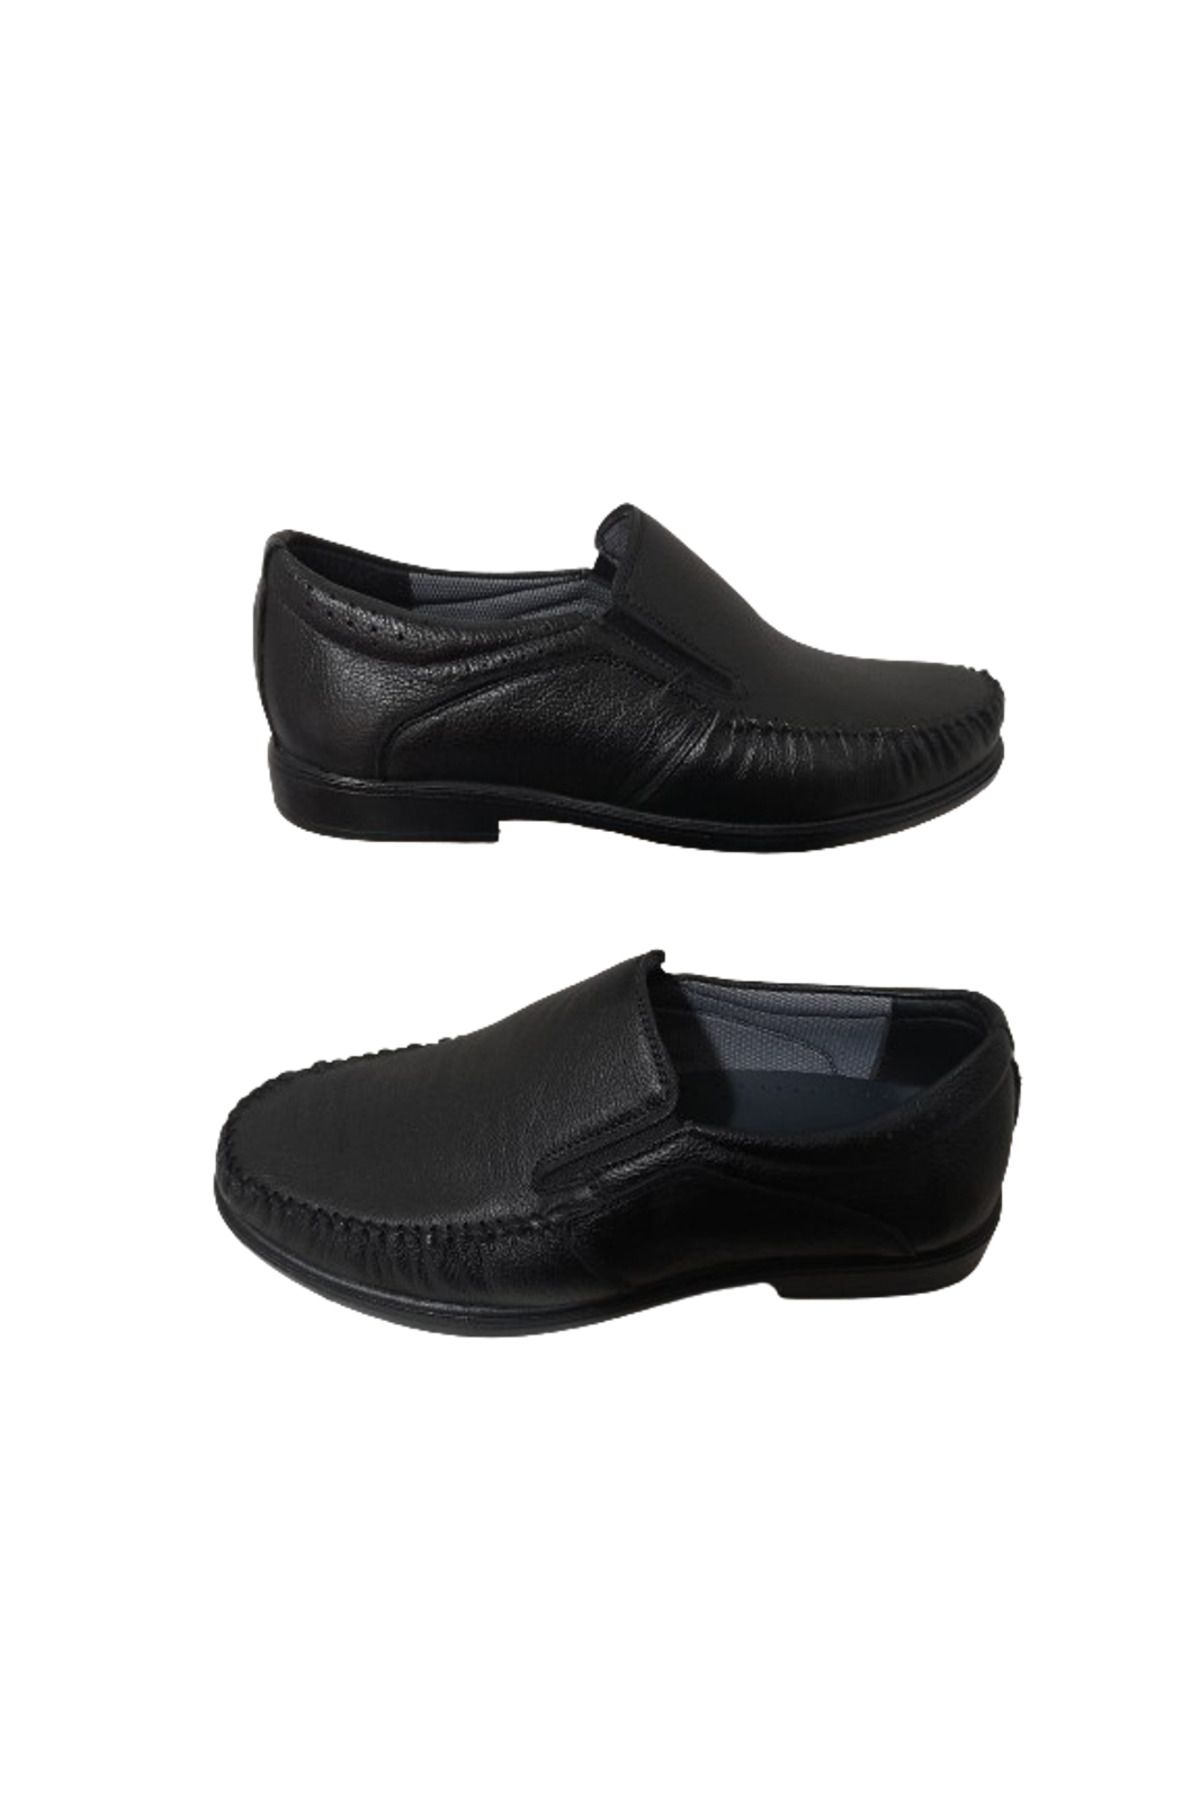 Modesa MR.WHİTE Erkek Siyah Deri Bağcıklı Ortopedik  Model Günlük Klasik Şık Ayakkabı